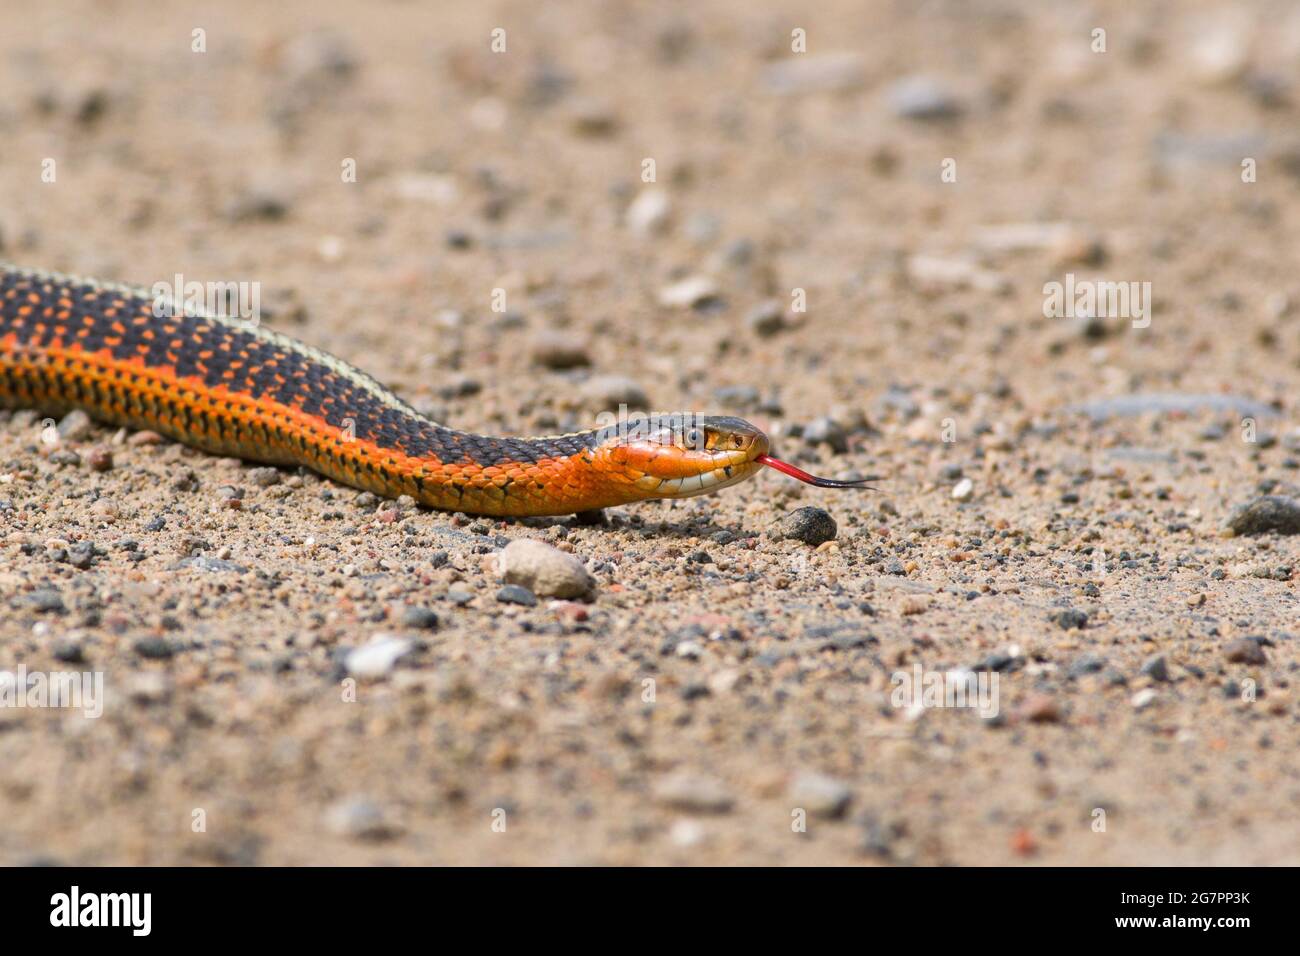 Orange or red eastern garter snake. Stock Photo